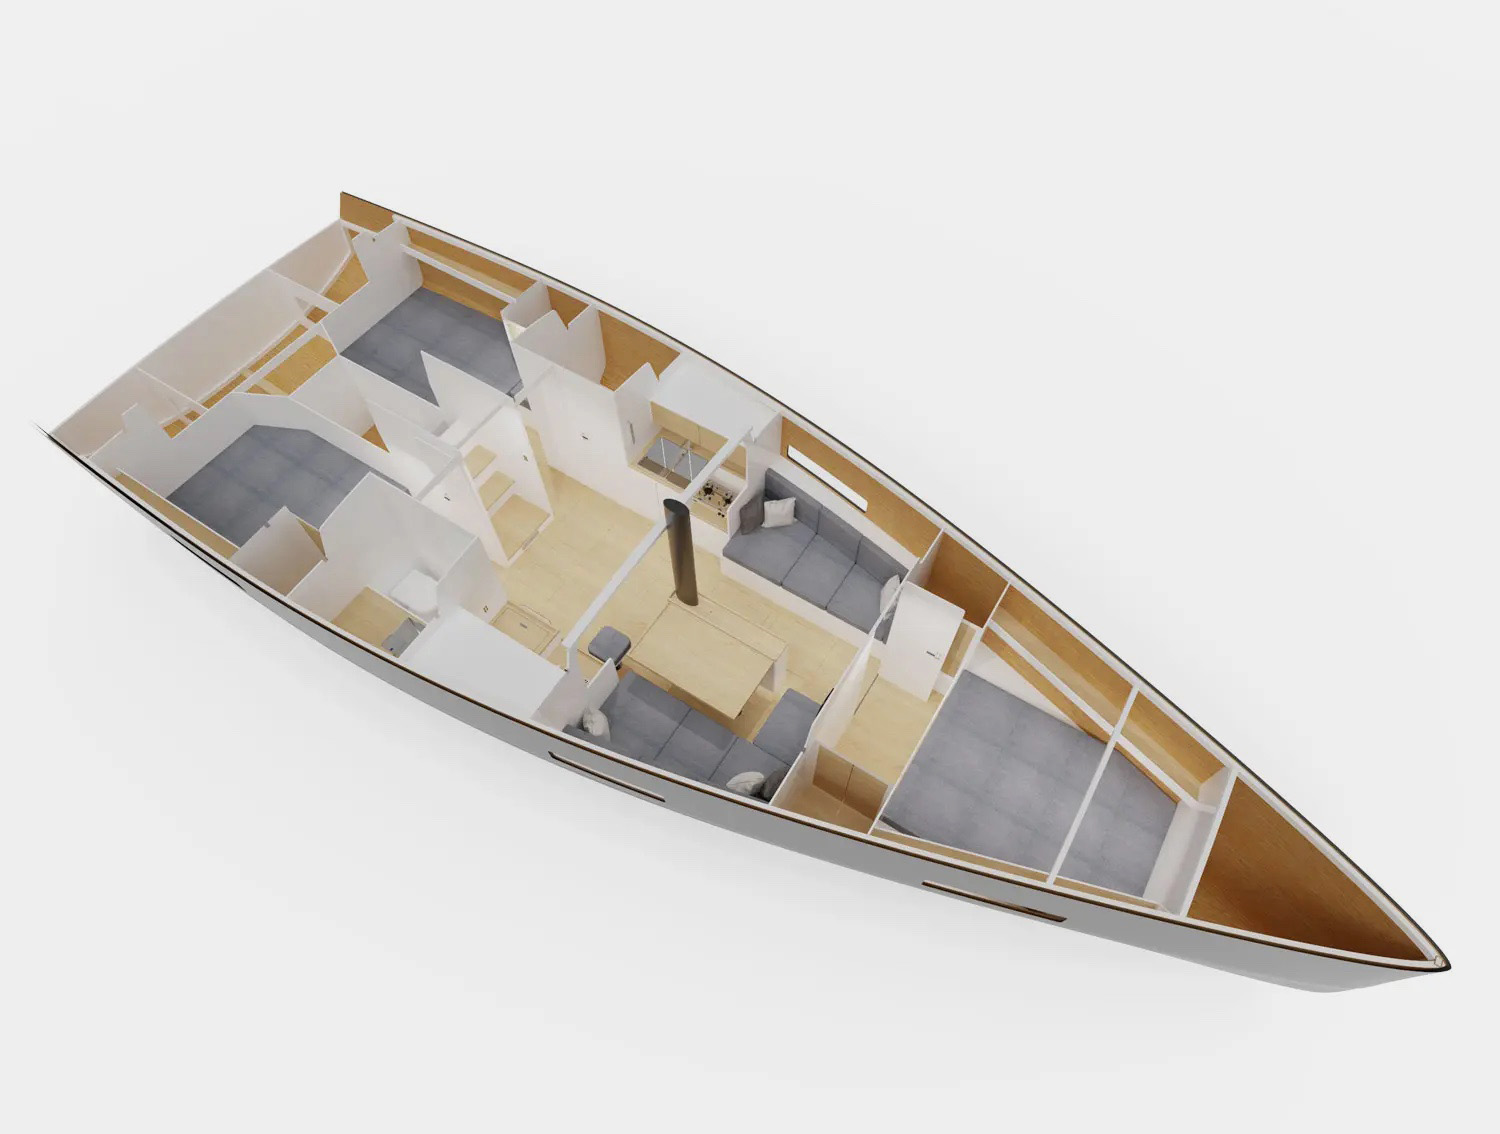 yacht 12 metri in legno progetto